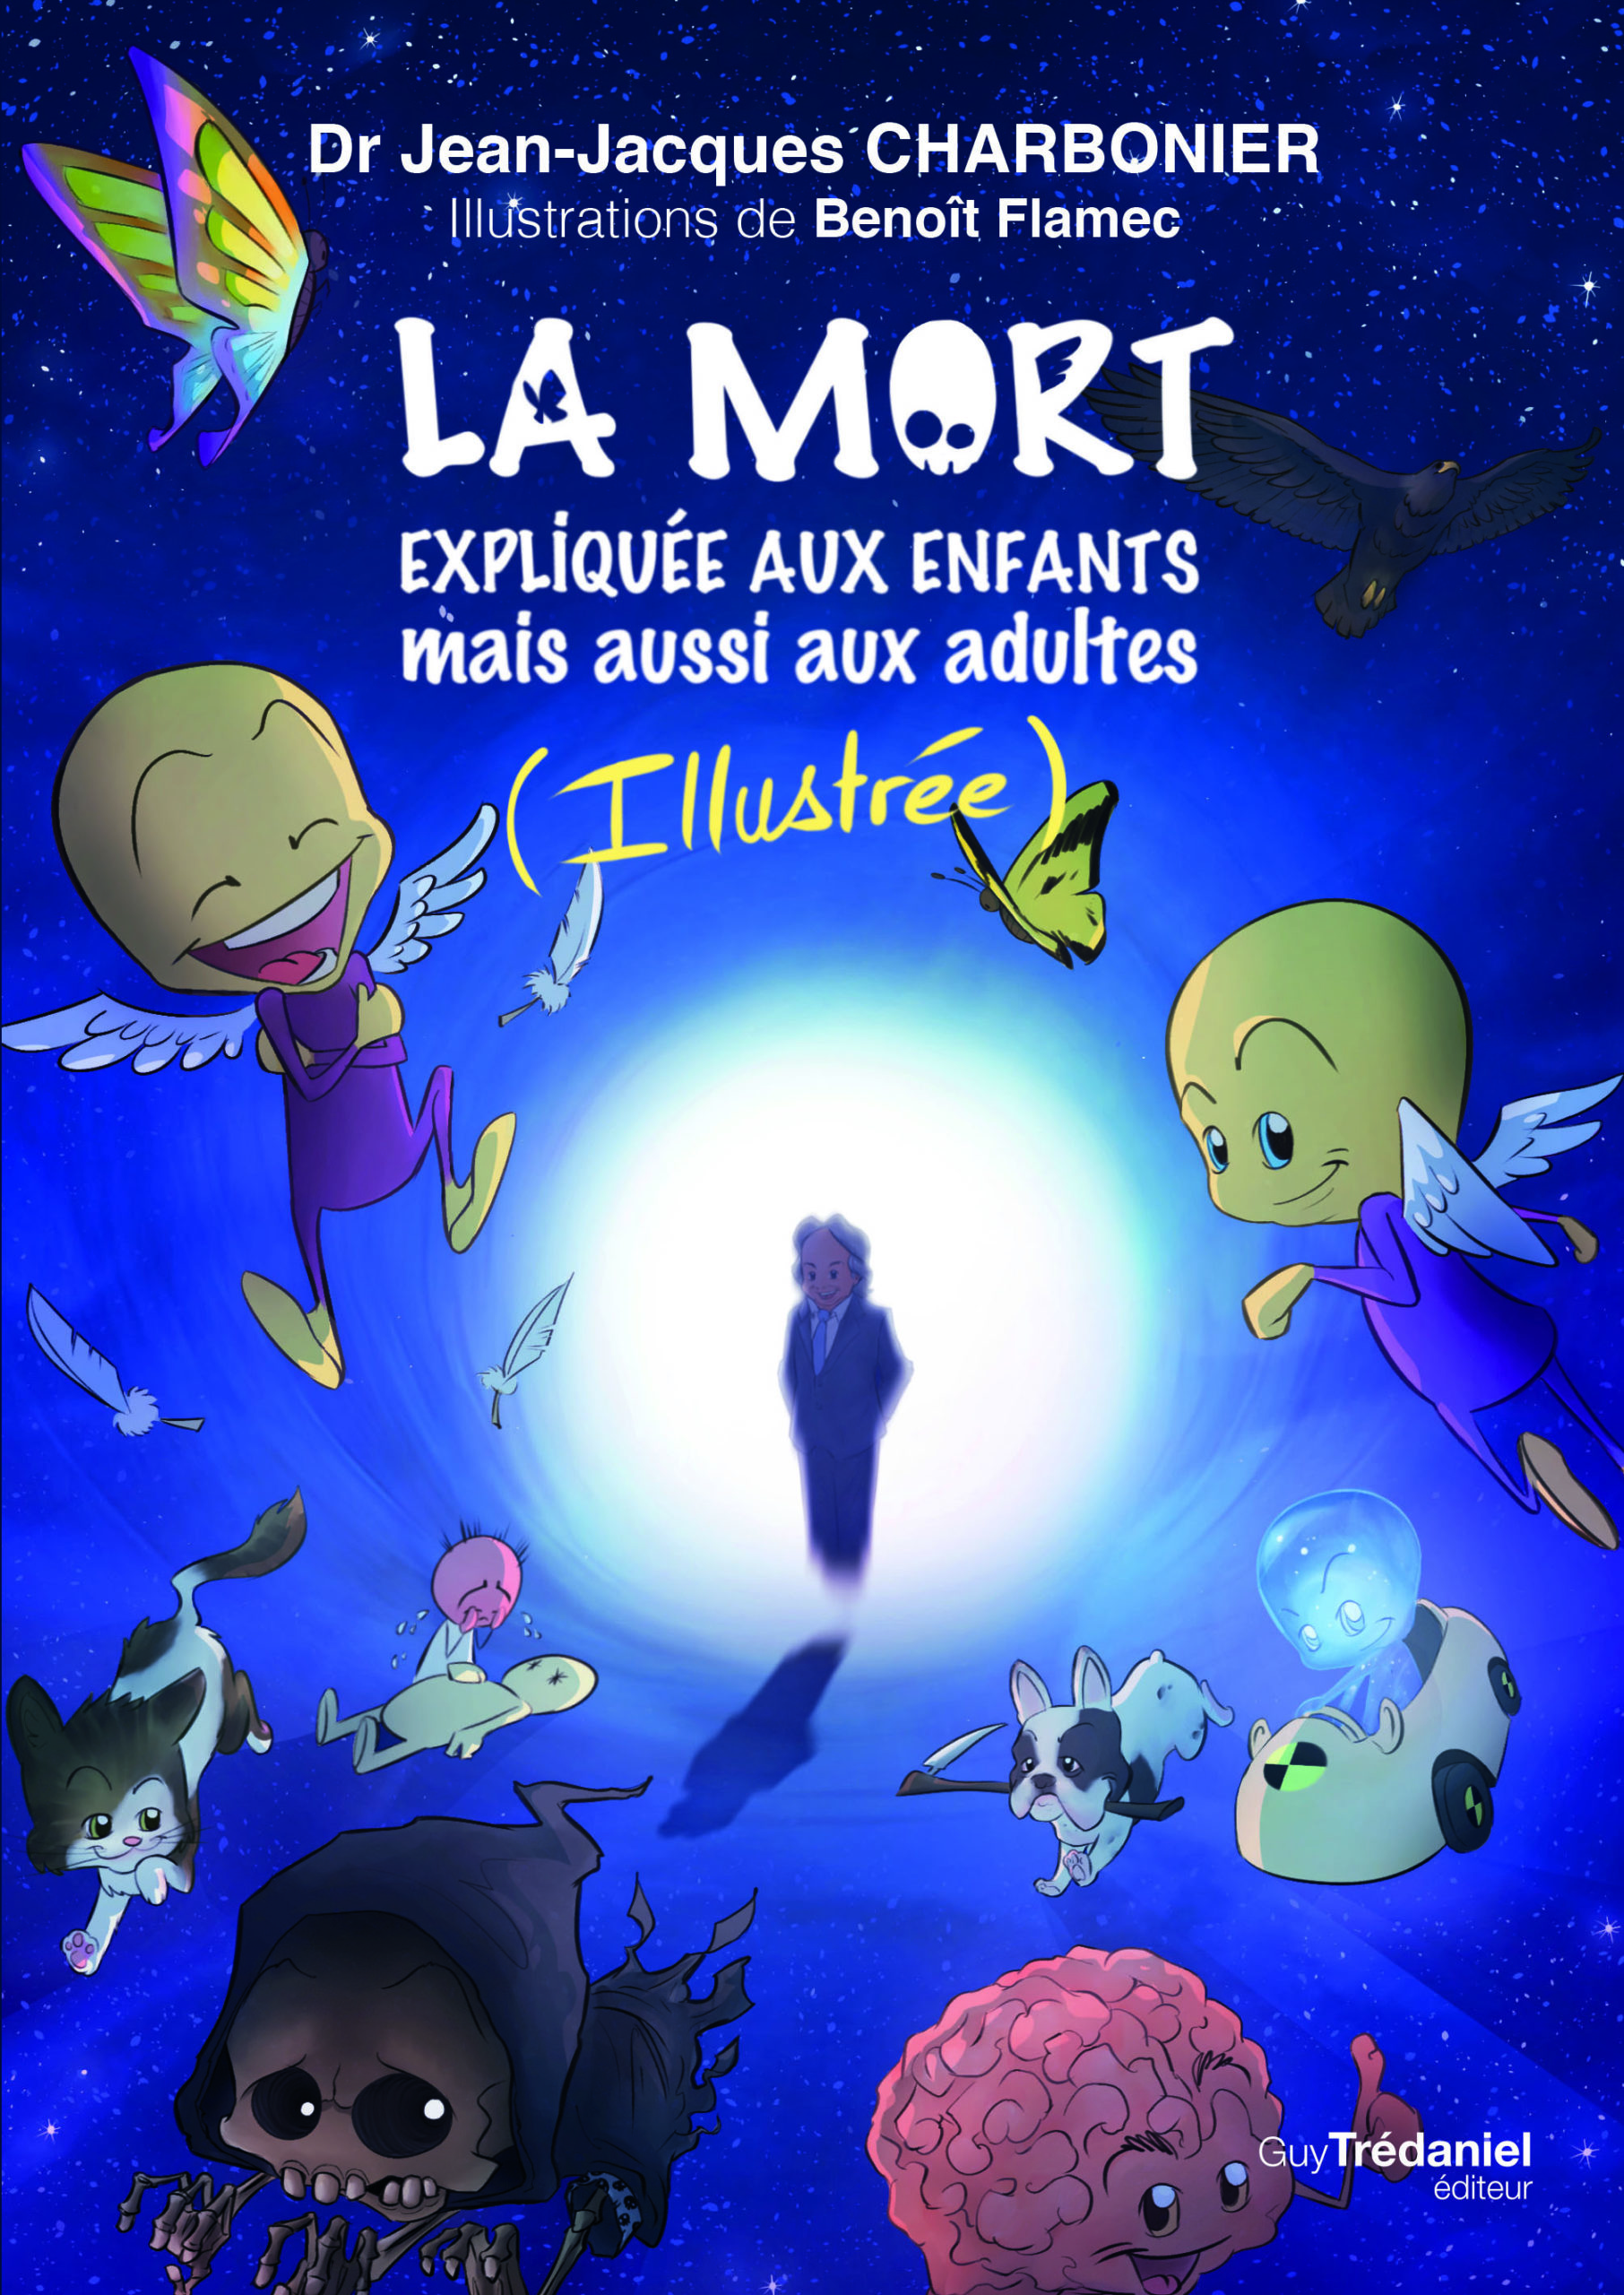 You are currently viewing La mort expliquée aux enfants mais aussi aux adultes (Illustré)